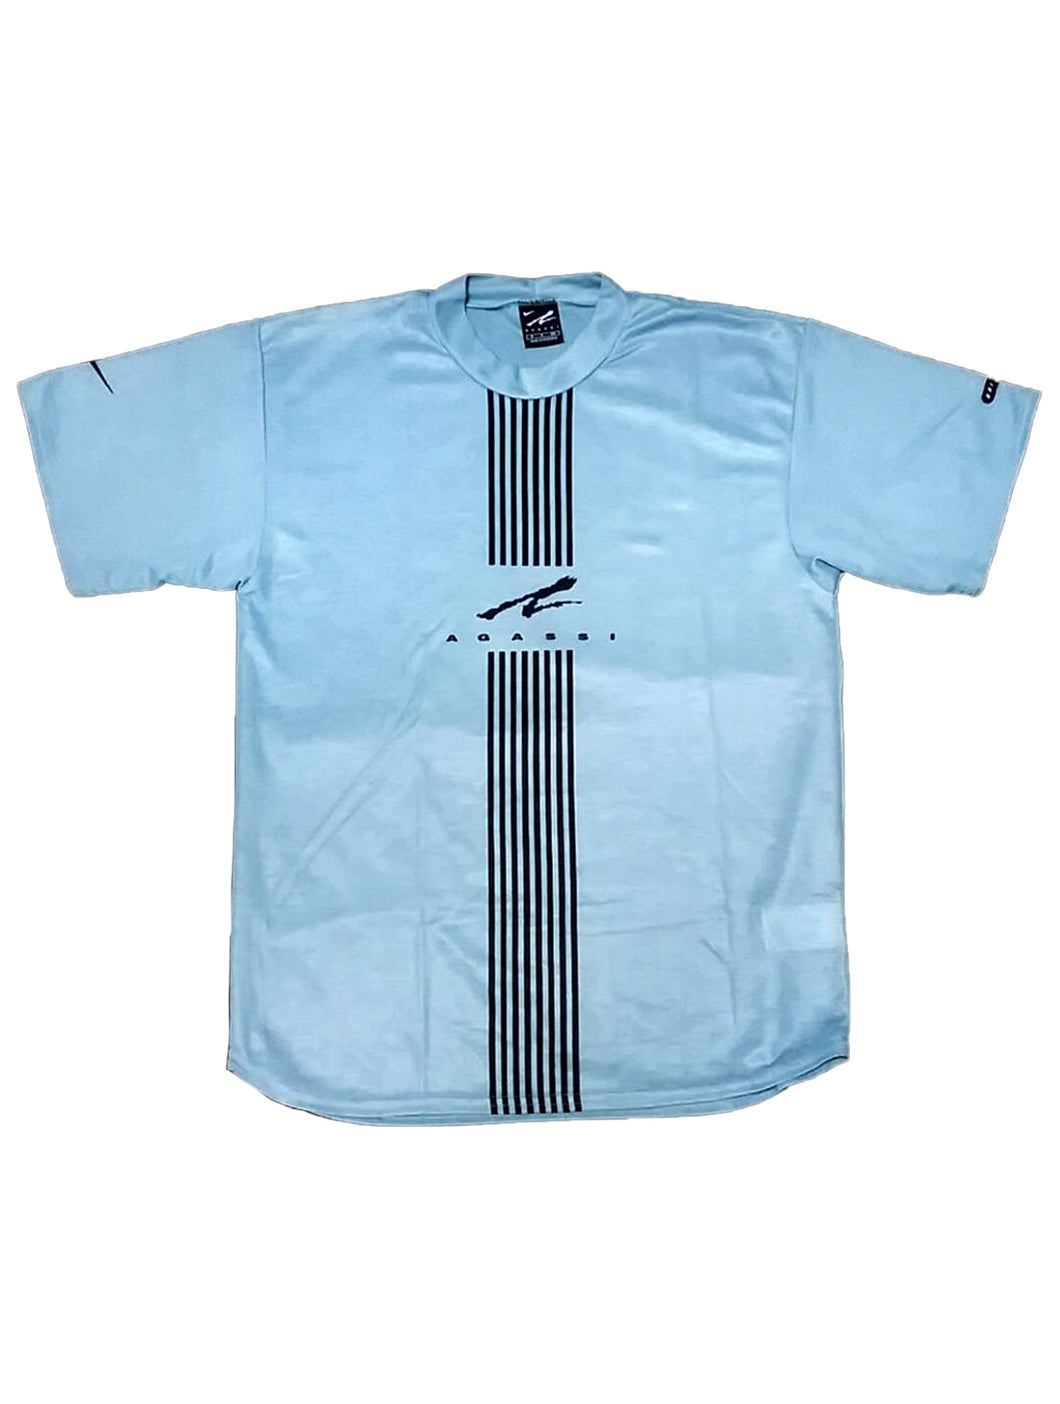 Nike Agassi Vintage Blue T-shirt